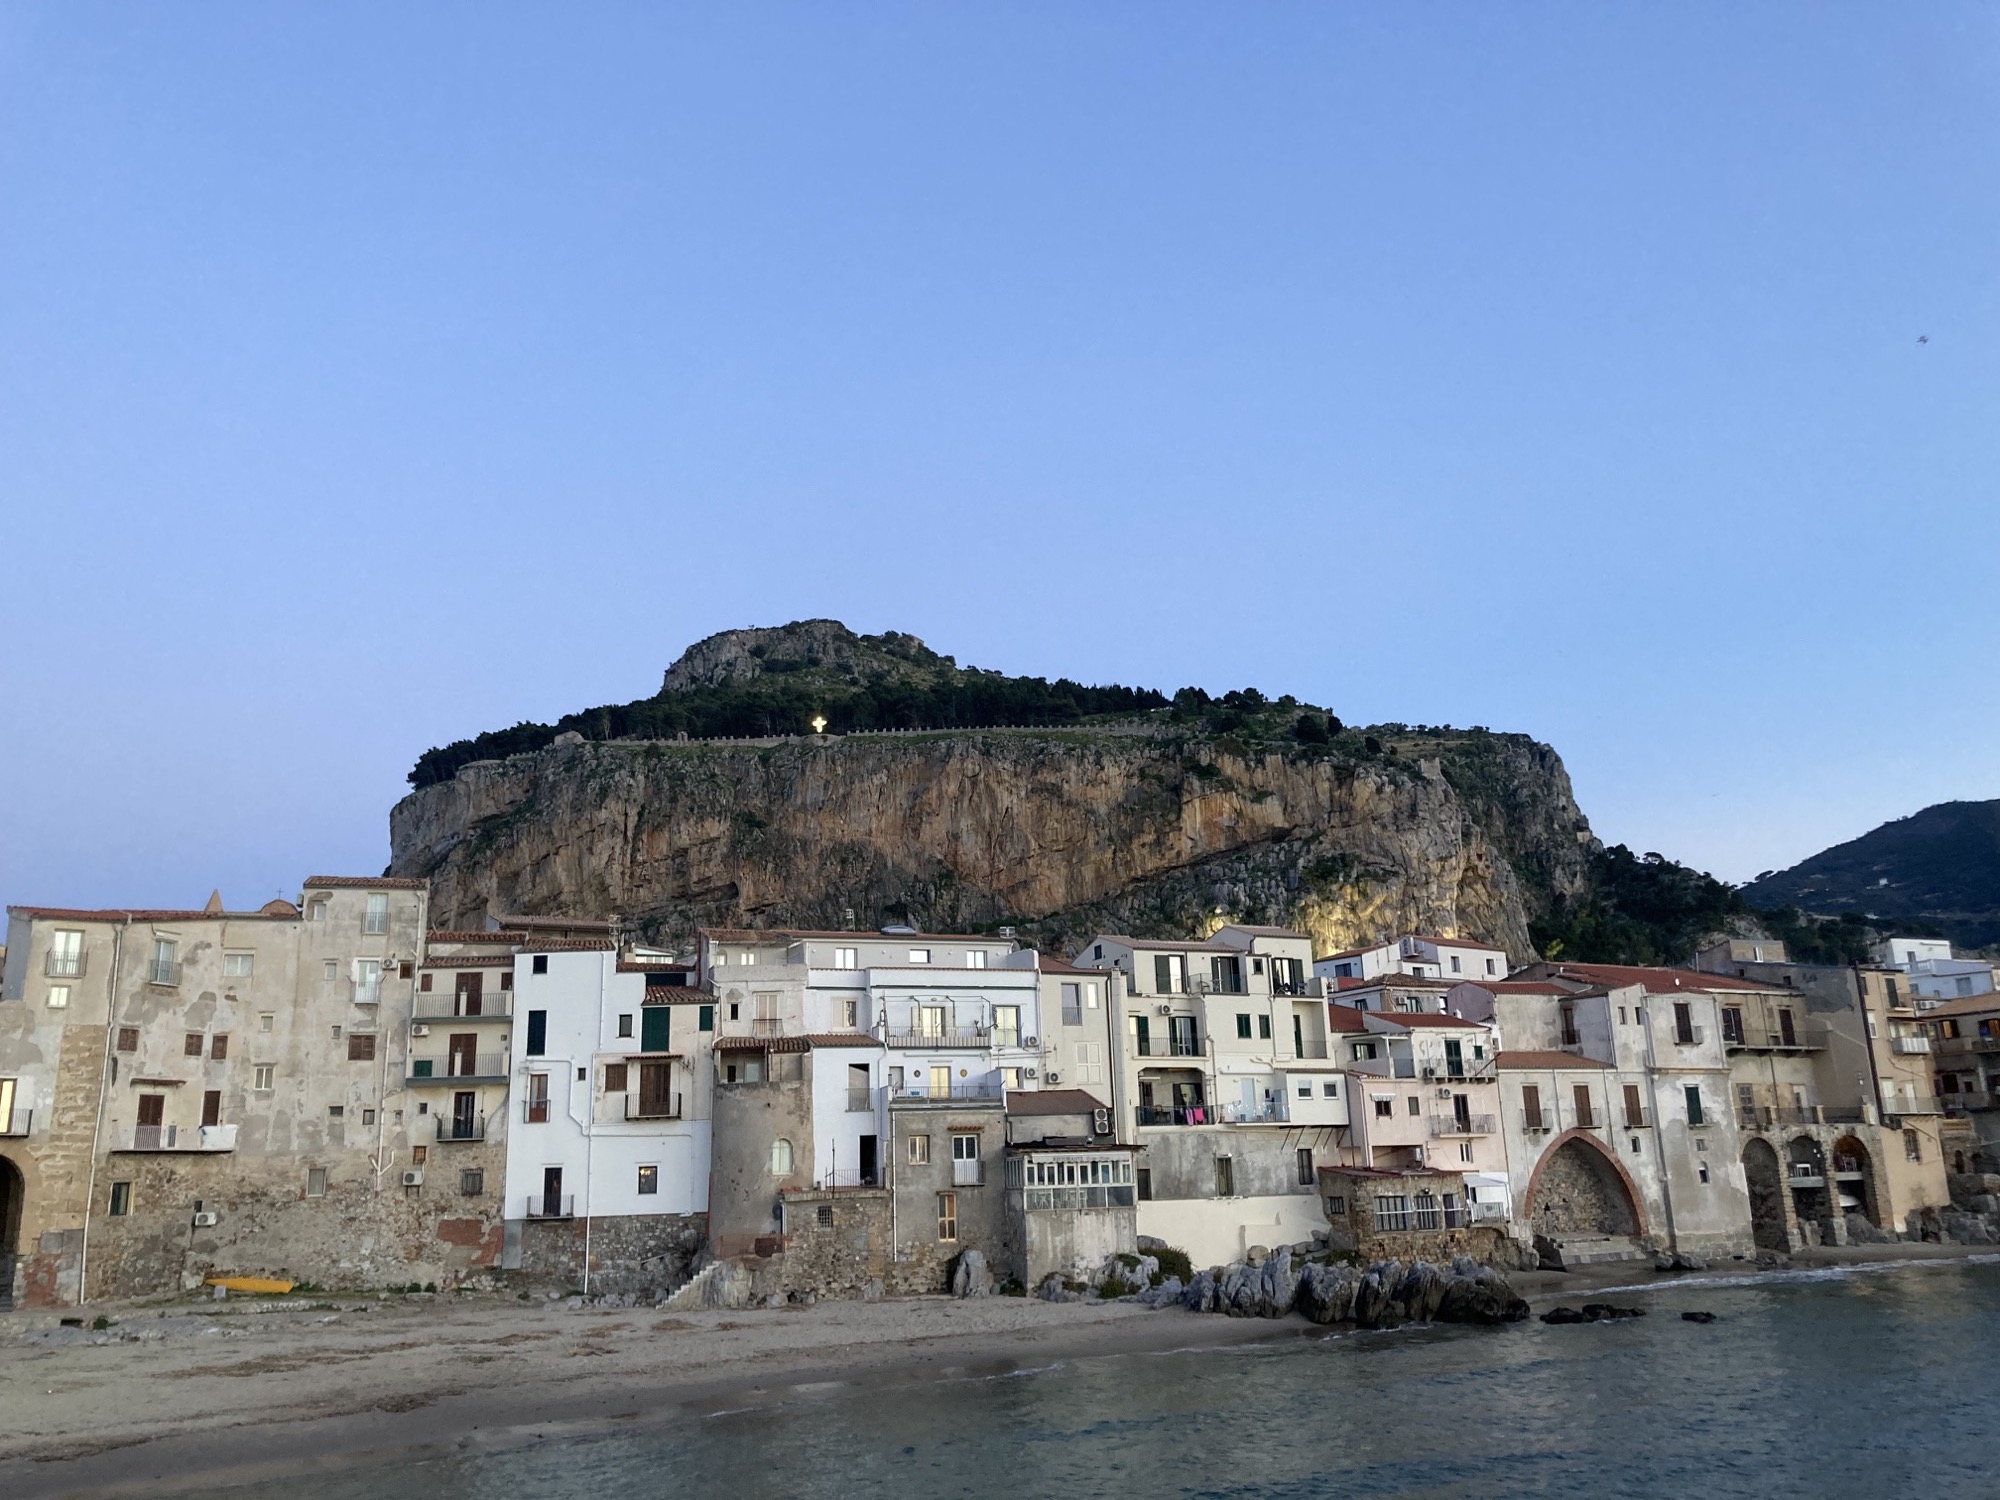 Berg Rocca di Cefalú vom Hafen aus gesehen, oben am Berg beleuchtet das bereits auf Bild 4 gezeigte christliche Kreuz